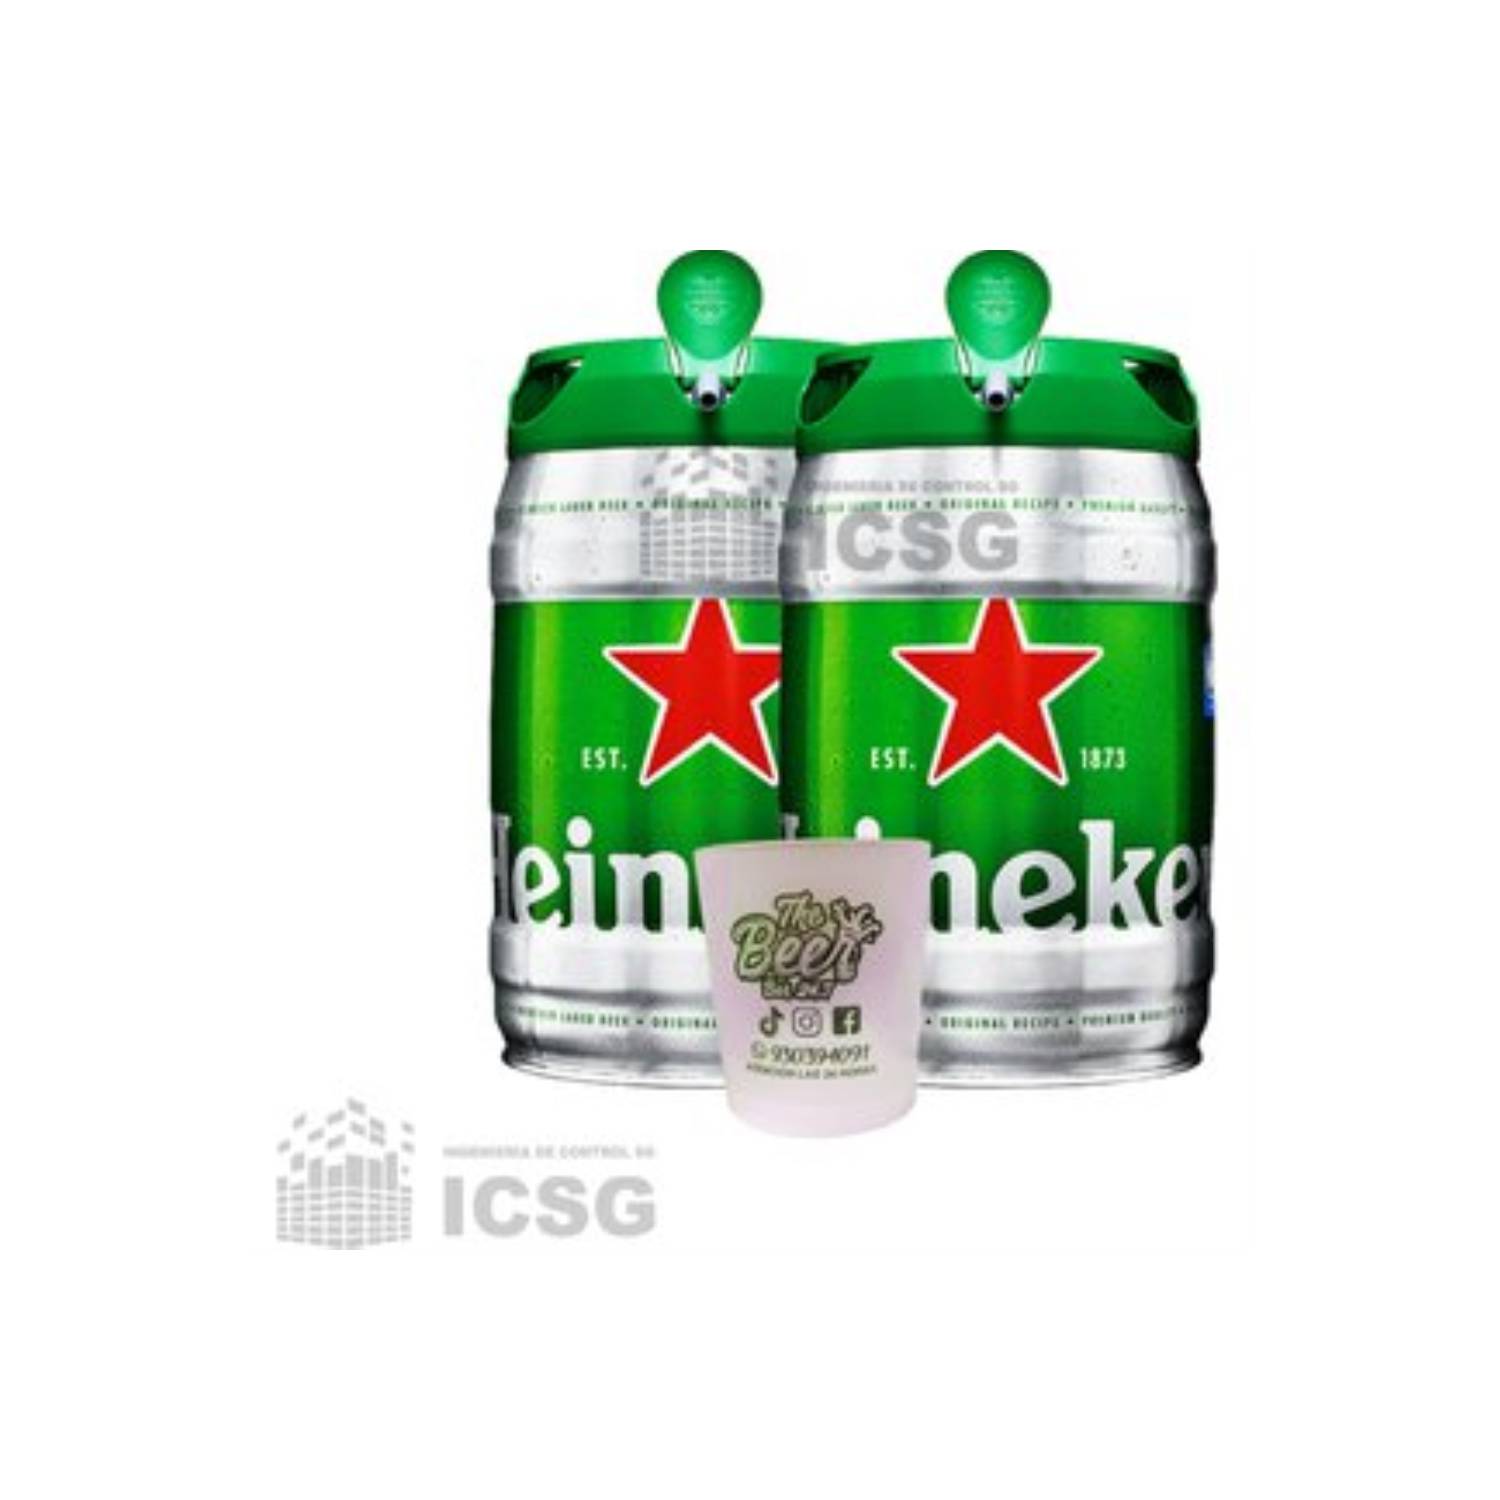 Pack 2 Cerveza Heineken de 5 Litros c/u HEINEKEN | falabella.com